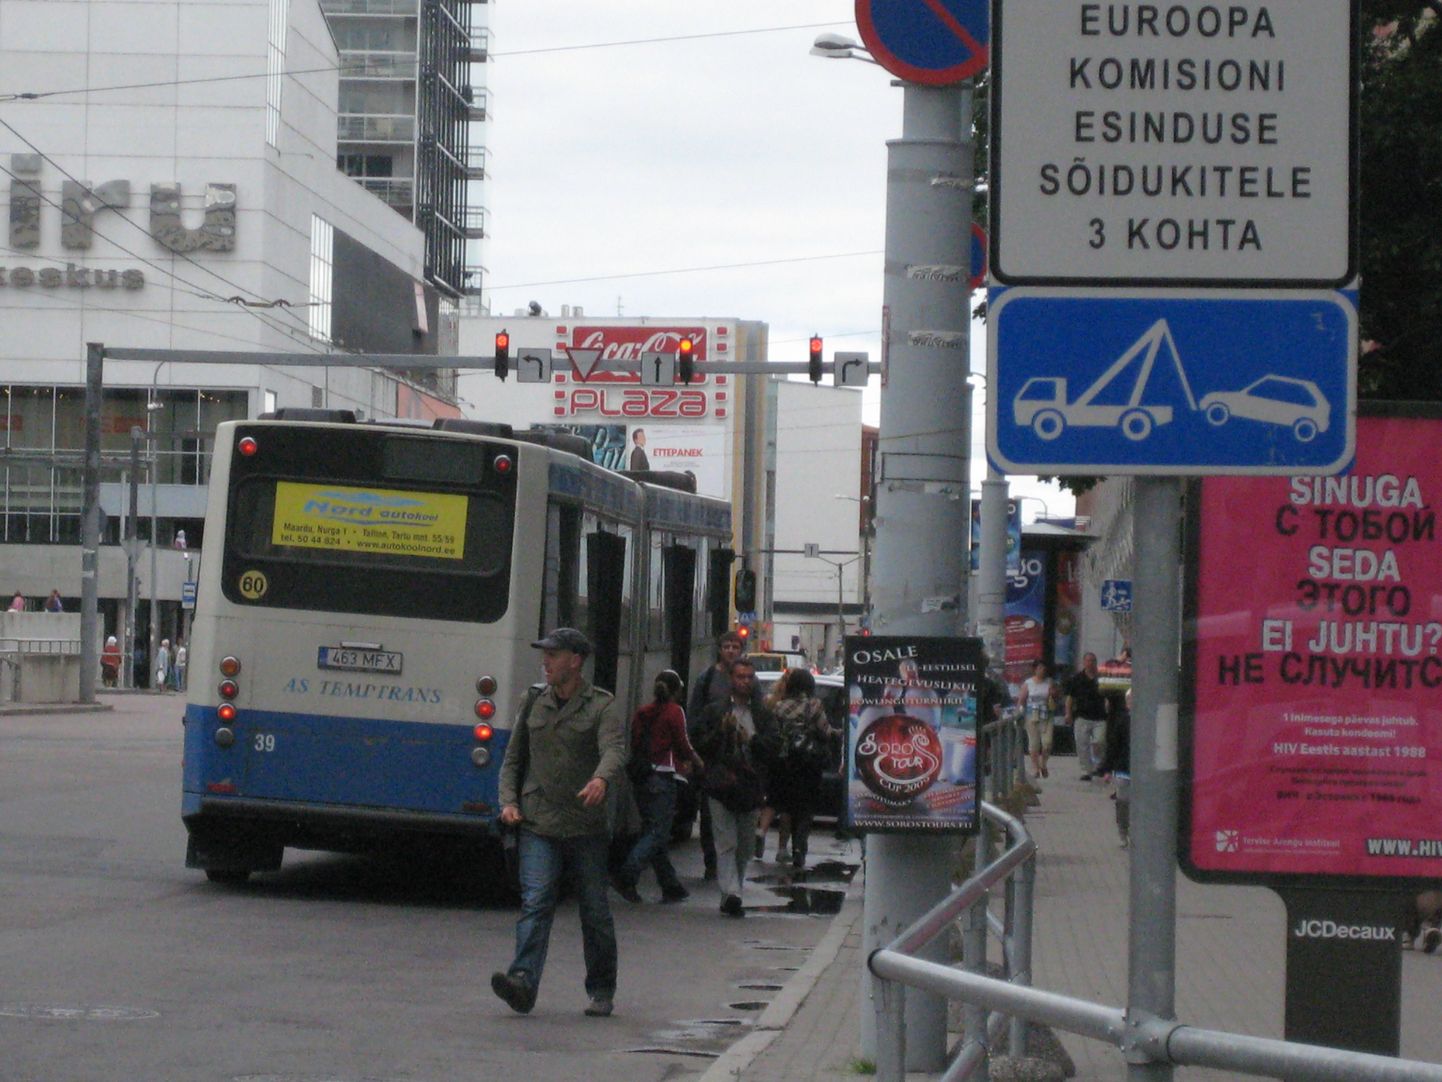 Maardu busside lõpp-peatus. Bussist väljuvad inimesed lähevad ükskõik kuhu mujale, aga mitte kõnniteele.